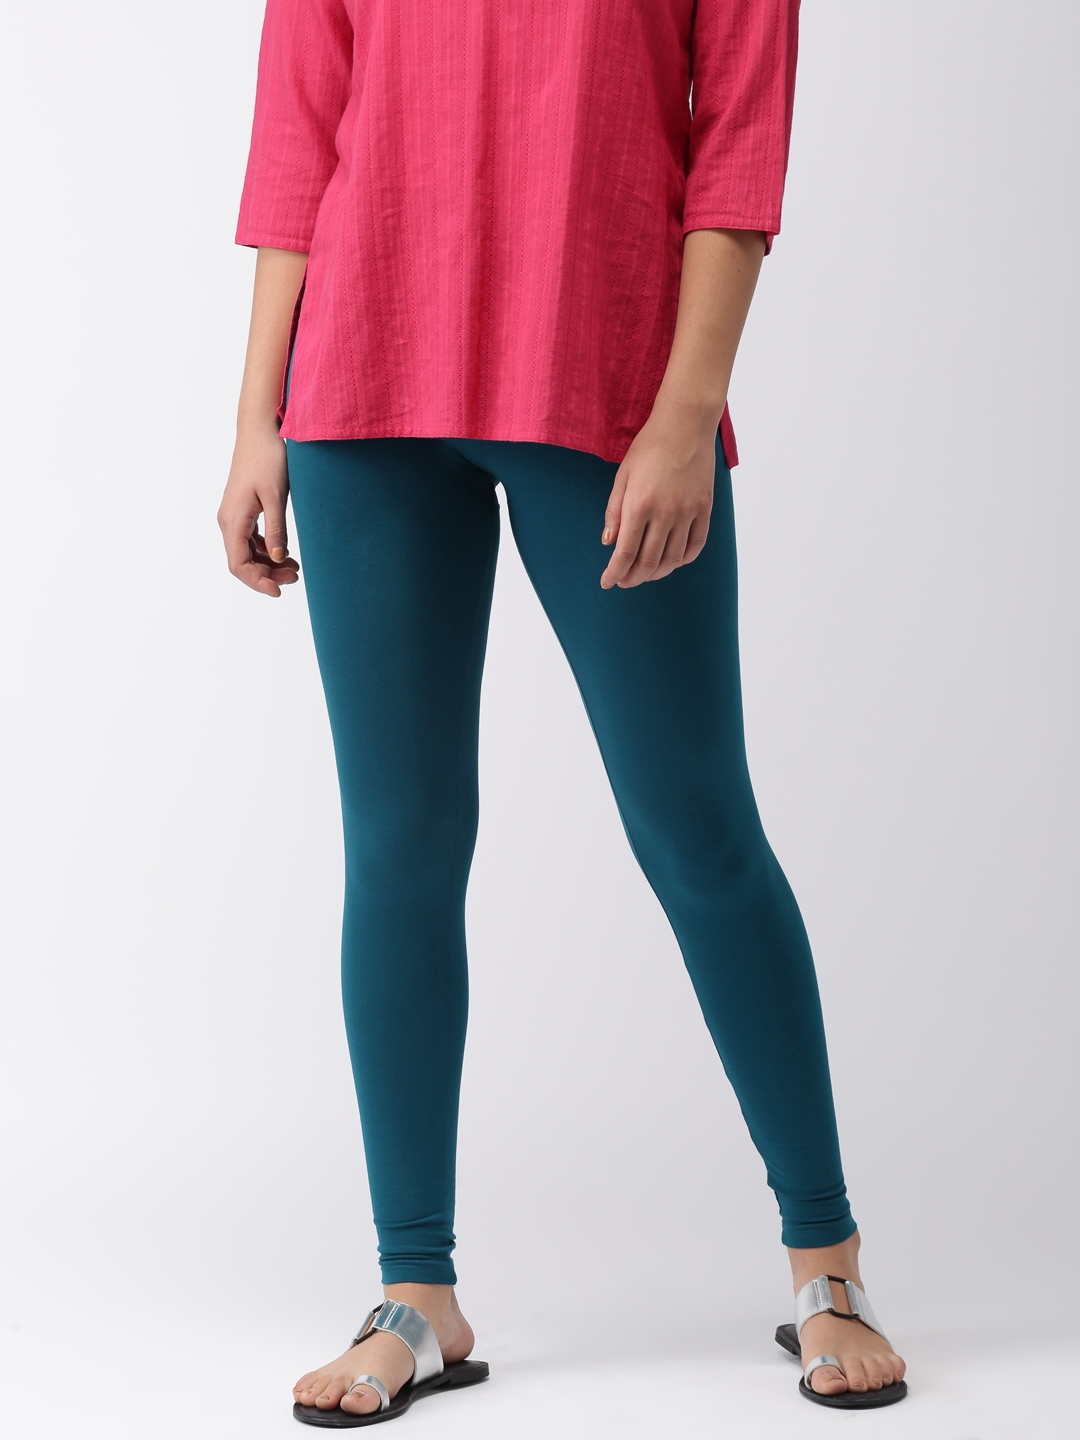 Blue Leggings For Women - Scrunch, High Waisted, Seamless Options -  Ryderwear-vinhomehanoi.com.vn